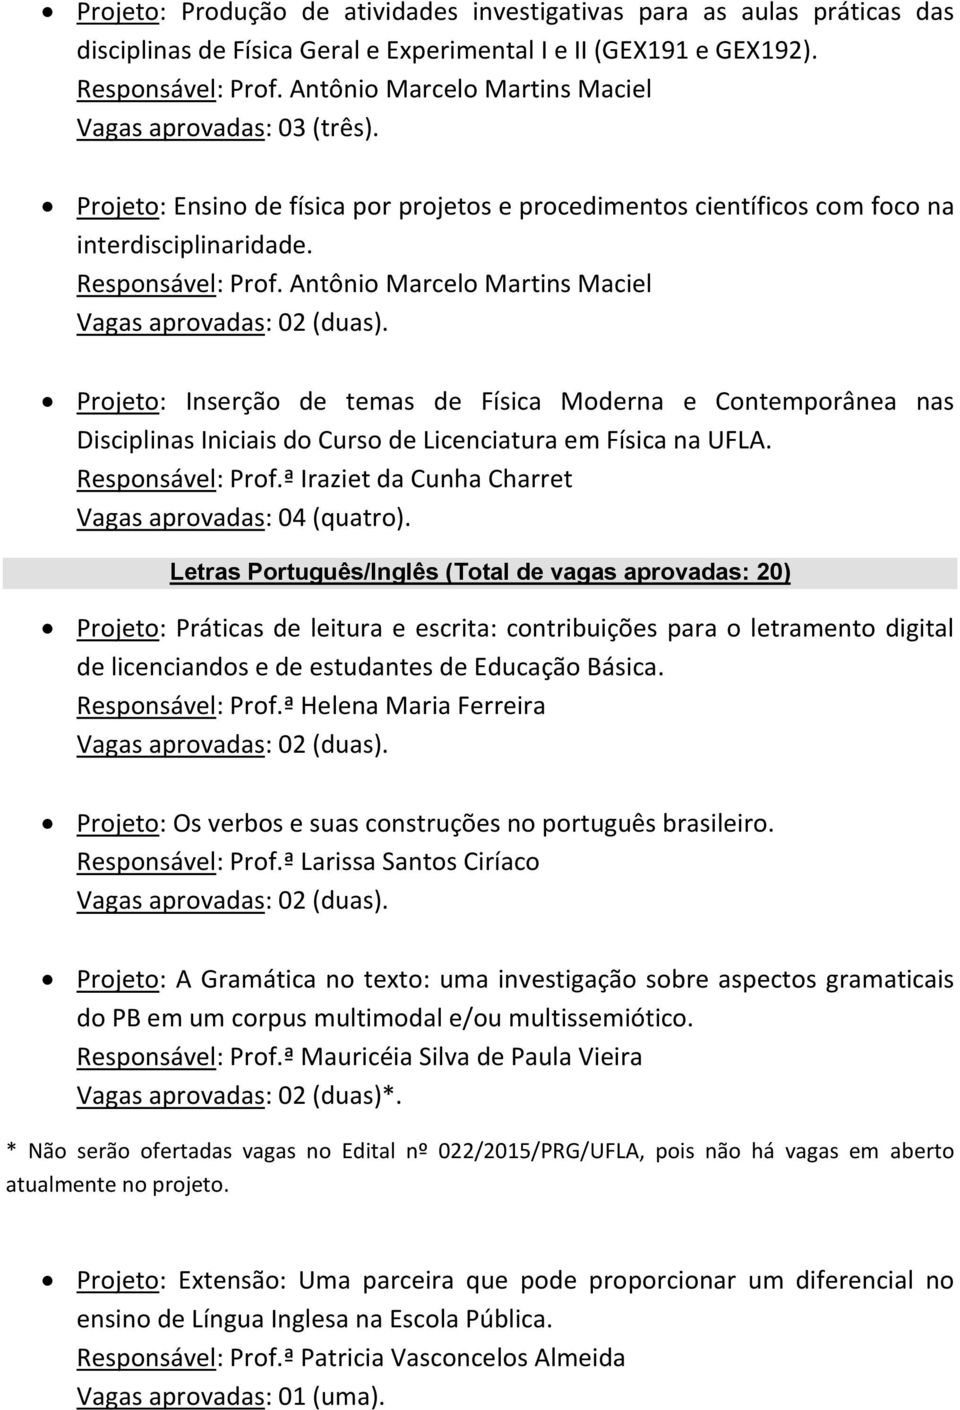 Antônio Marcelo Martins Maciel Projeto: Inserção de temas de Física Moderna e Contemporânea nas Disciplinas Iniciais do Curso de Licenciatura em Física na UFLA. Responsável: Prof.